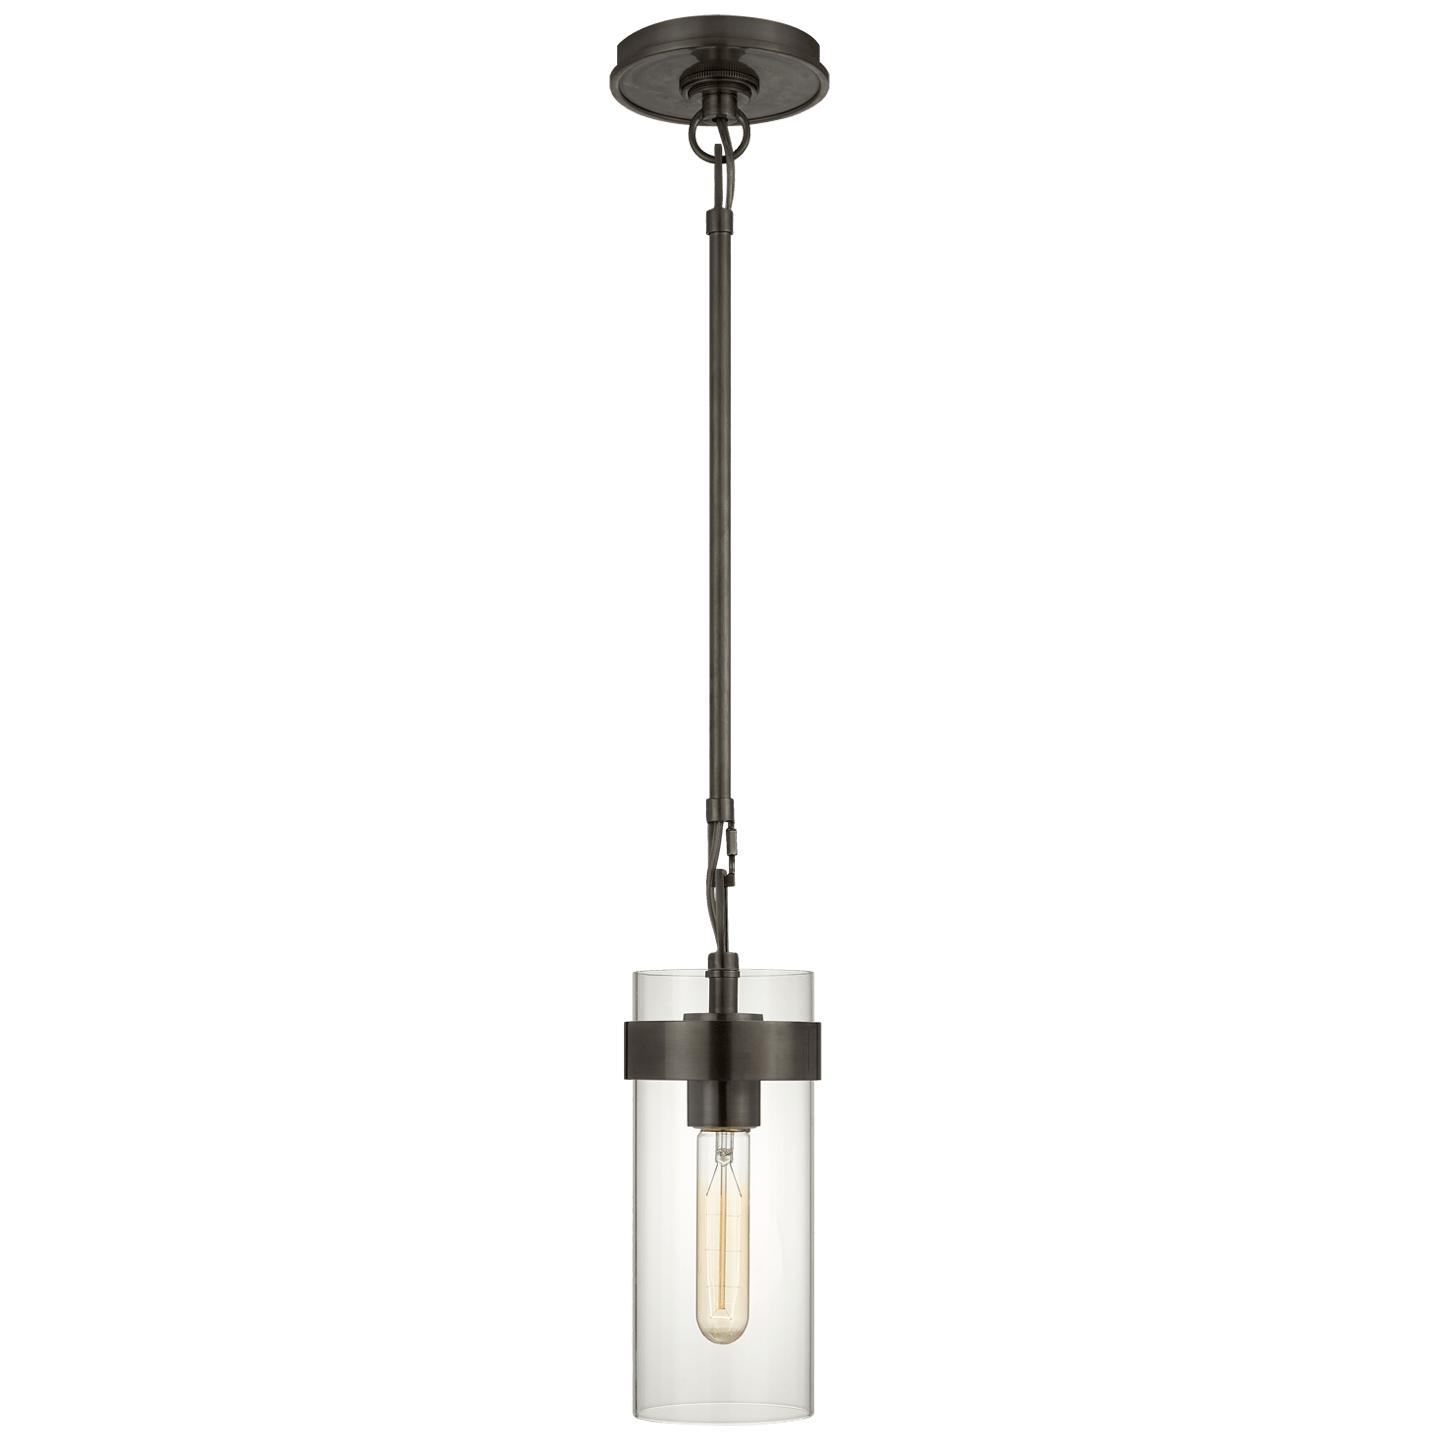 Купить Подвесной светильник Presidio Petite Pendant в интернет-магазине roooms.ru